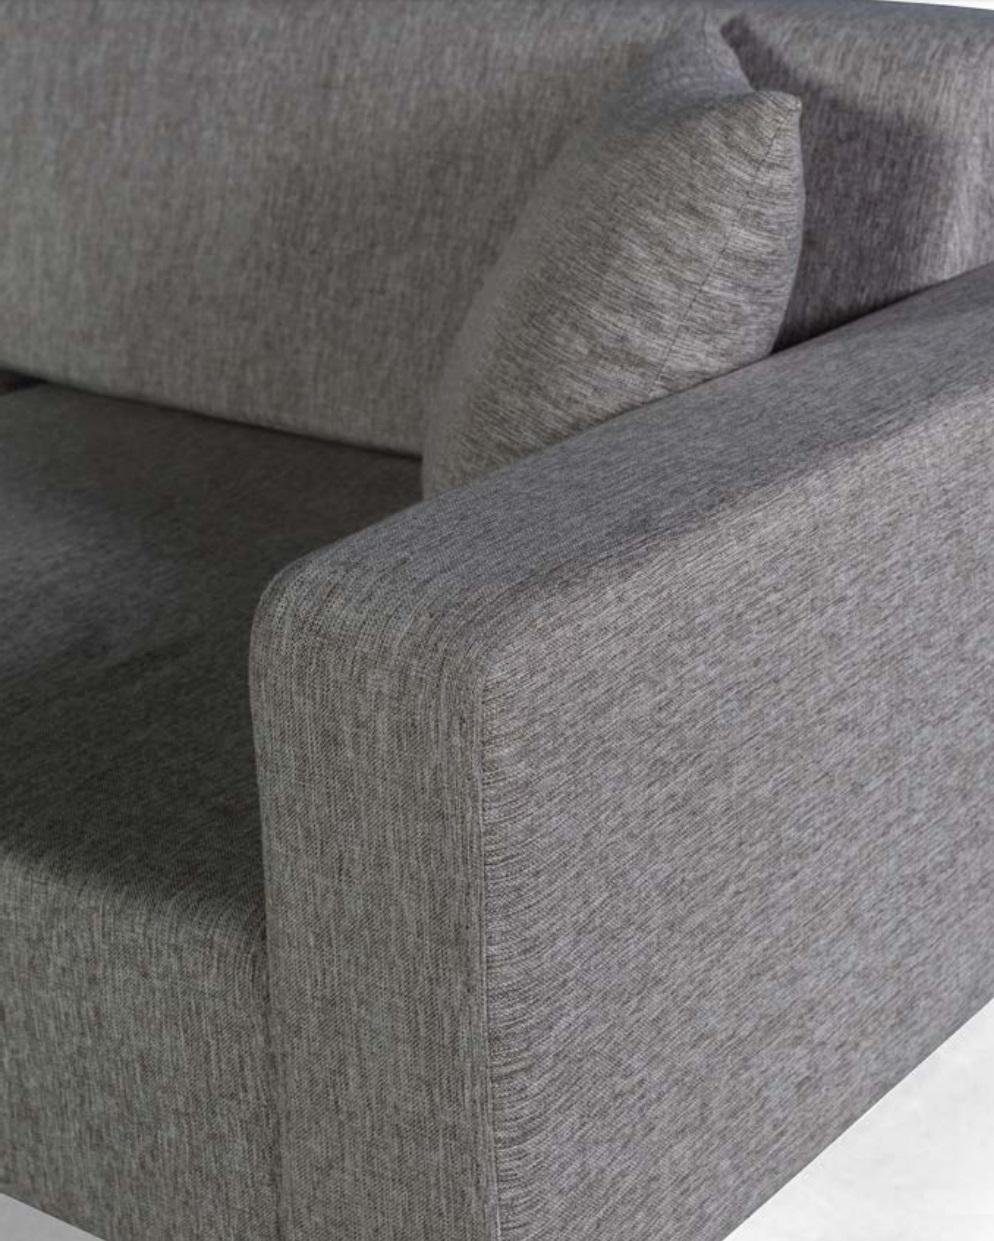 Europe JVmoebel Textil Sofa Made Grau, Wohnzimmer Dreisitzer Couchen in Sofa Polster Sitz